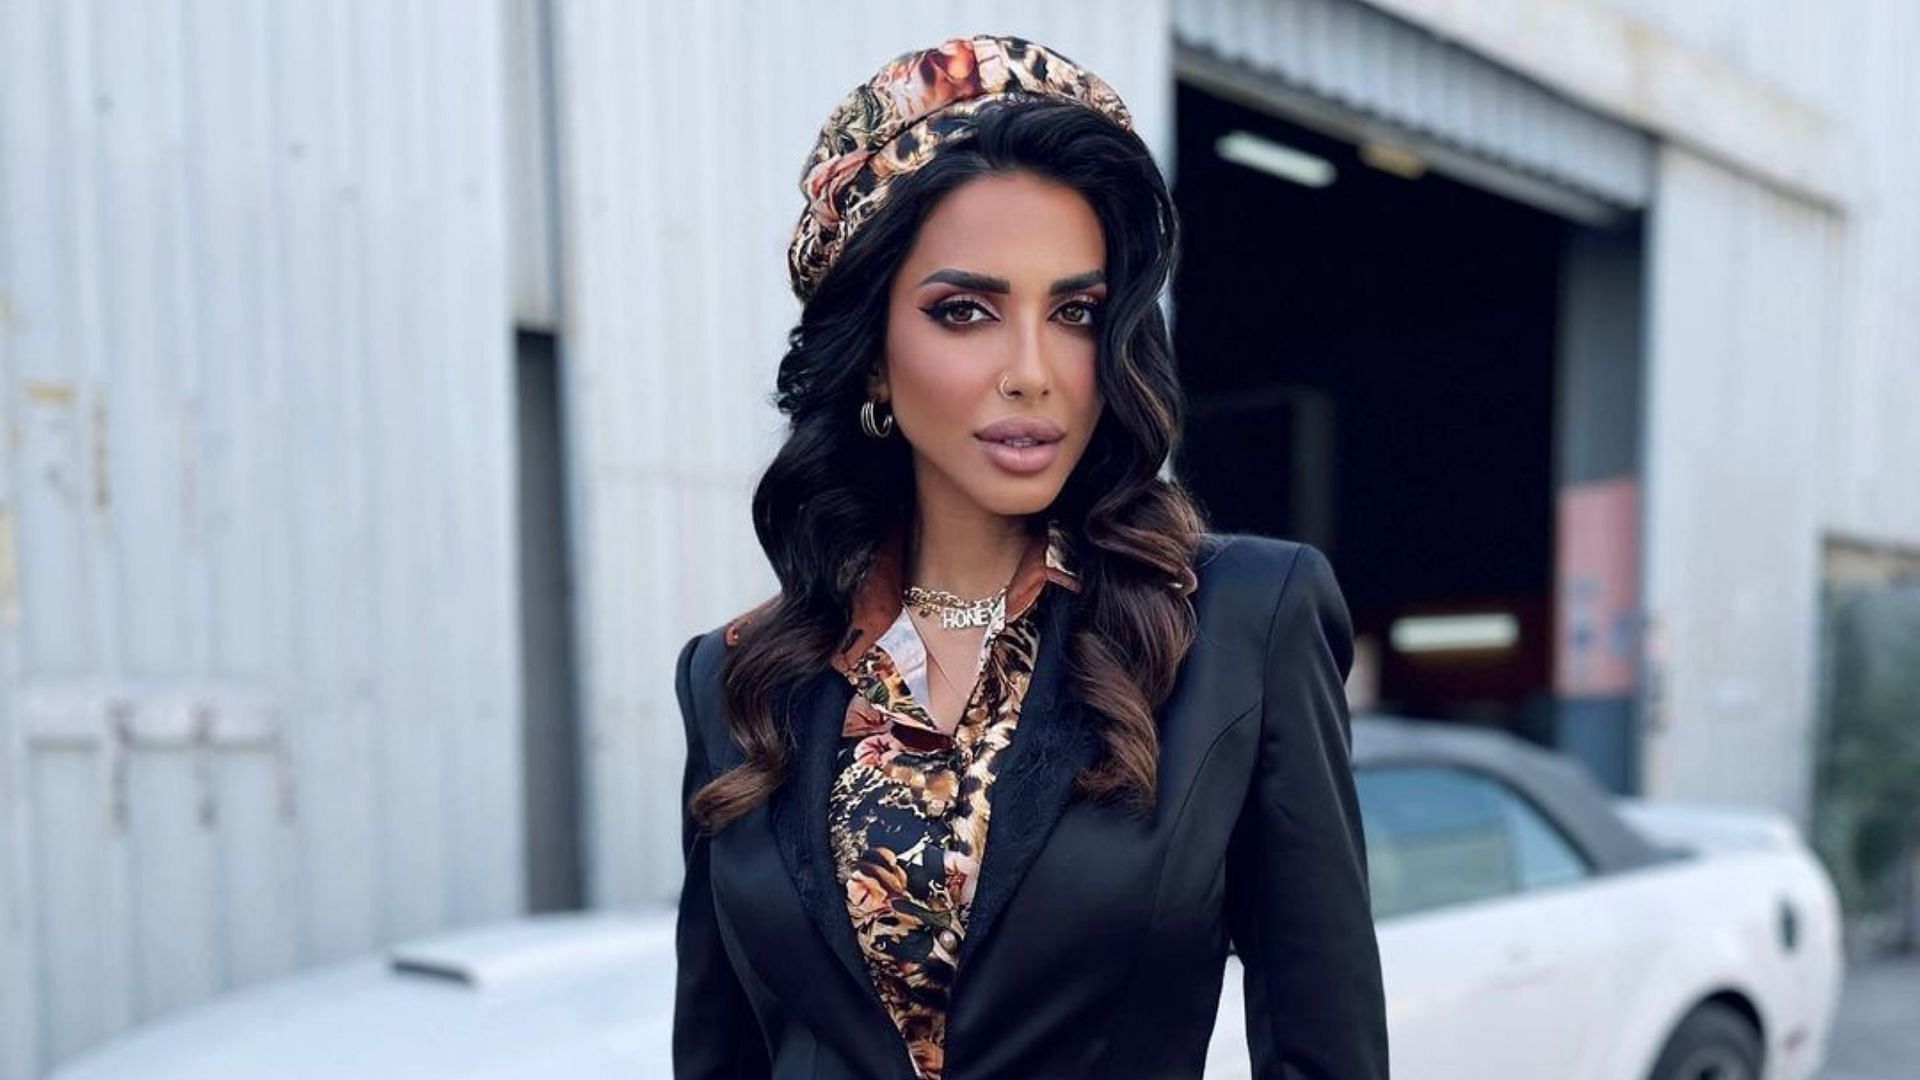 Meet Sara Al Madani from RHODubai Season 1 (Image via sara_almadani_/Instagram)